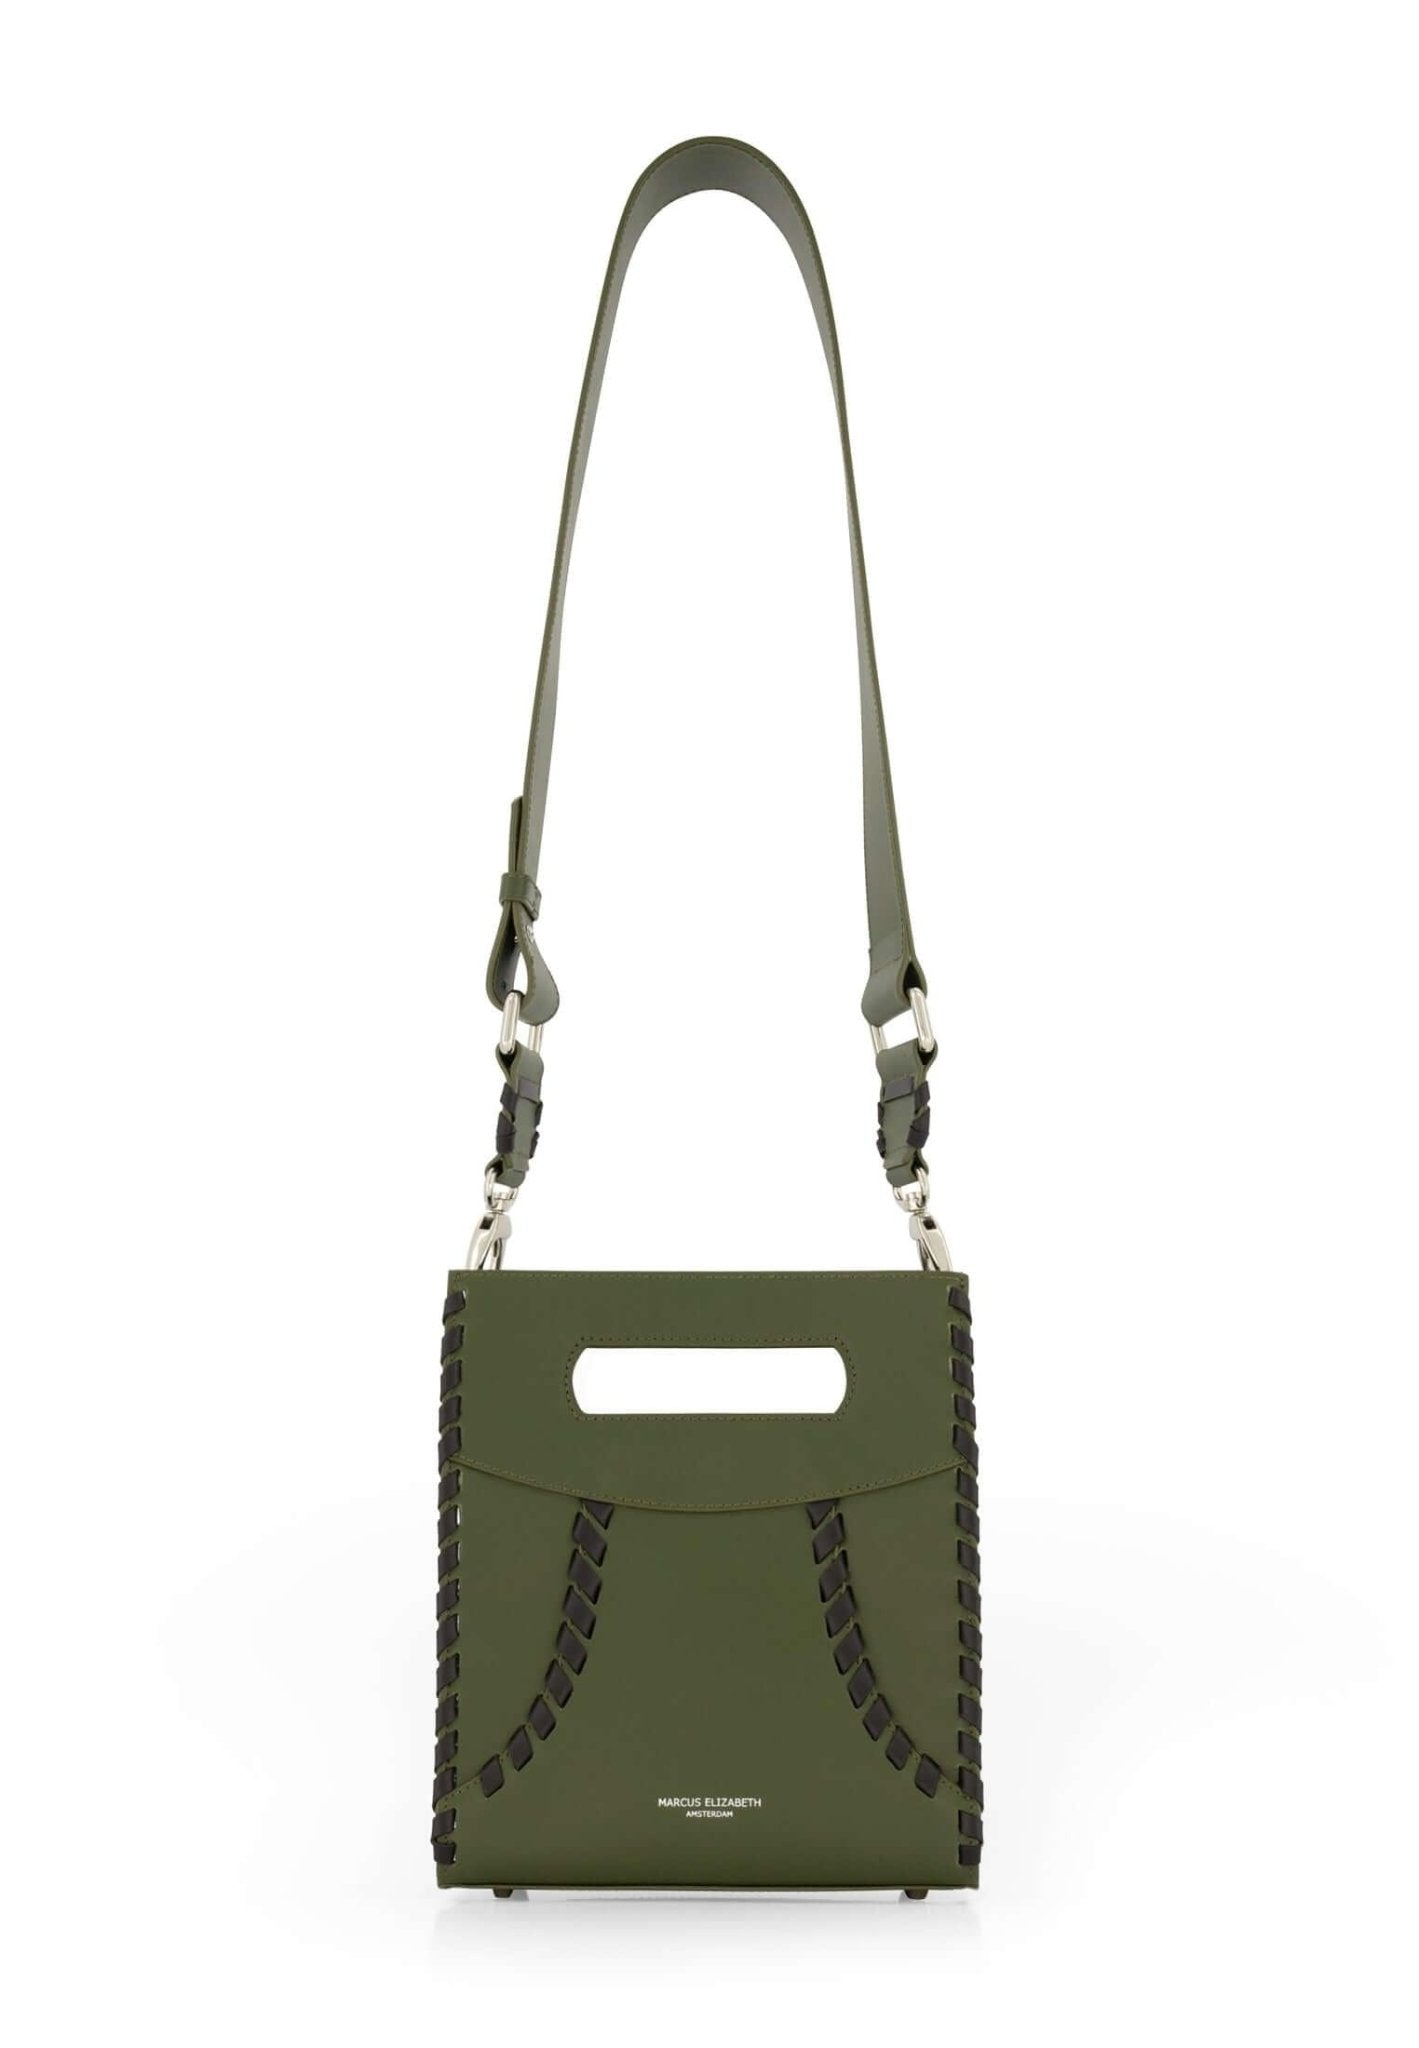 Maxima Limited Edition Olive - MARCUS ELIZABETH - Handbags - Maxima Limited Edition Olive - MARCUS ELIZABETH